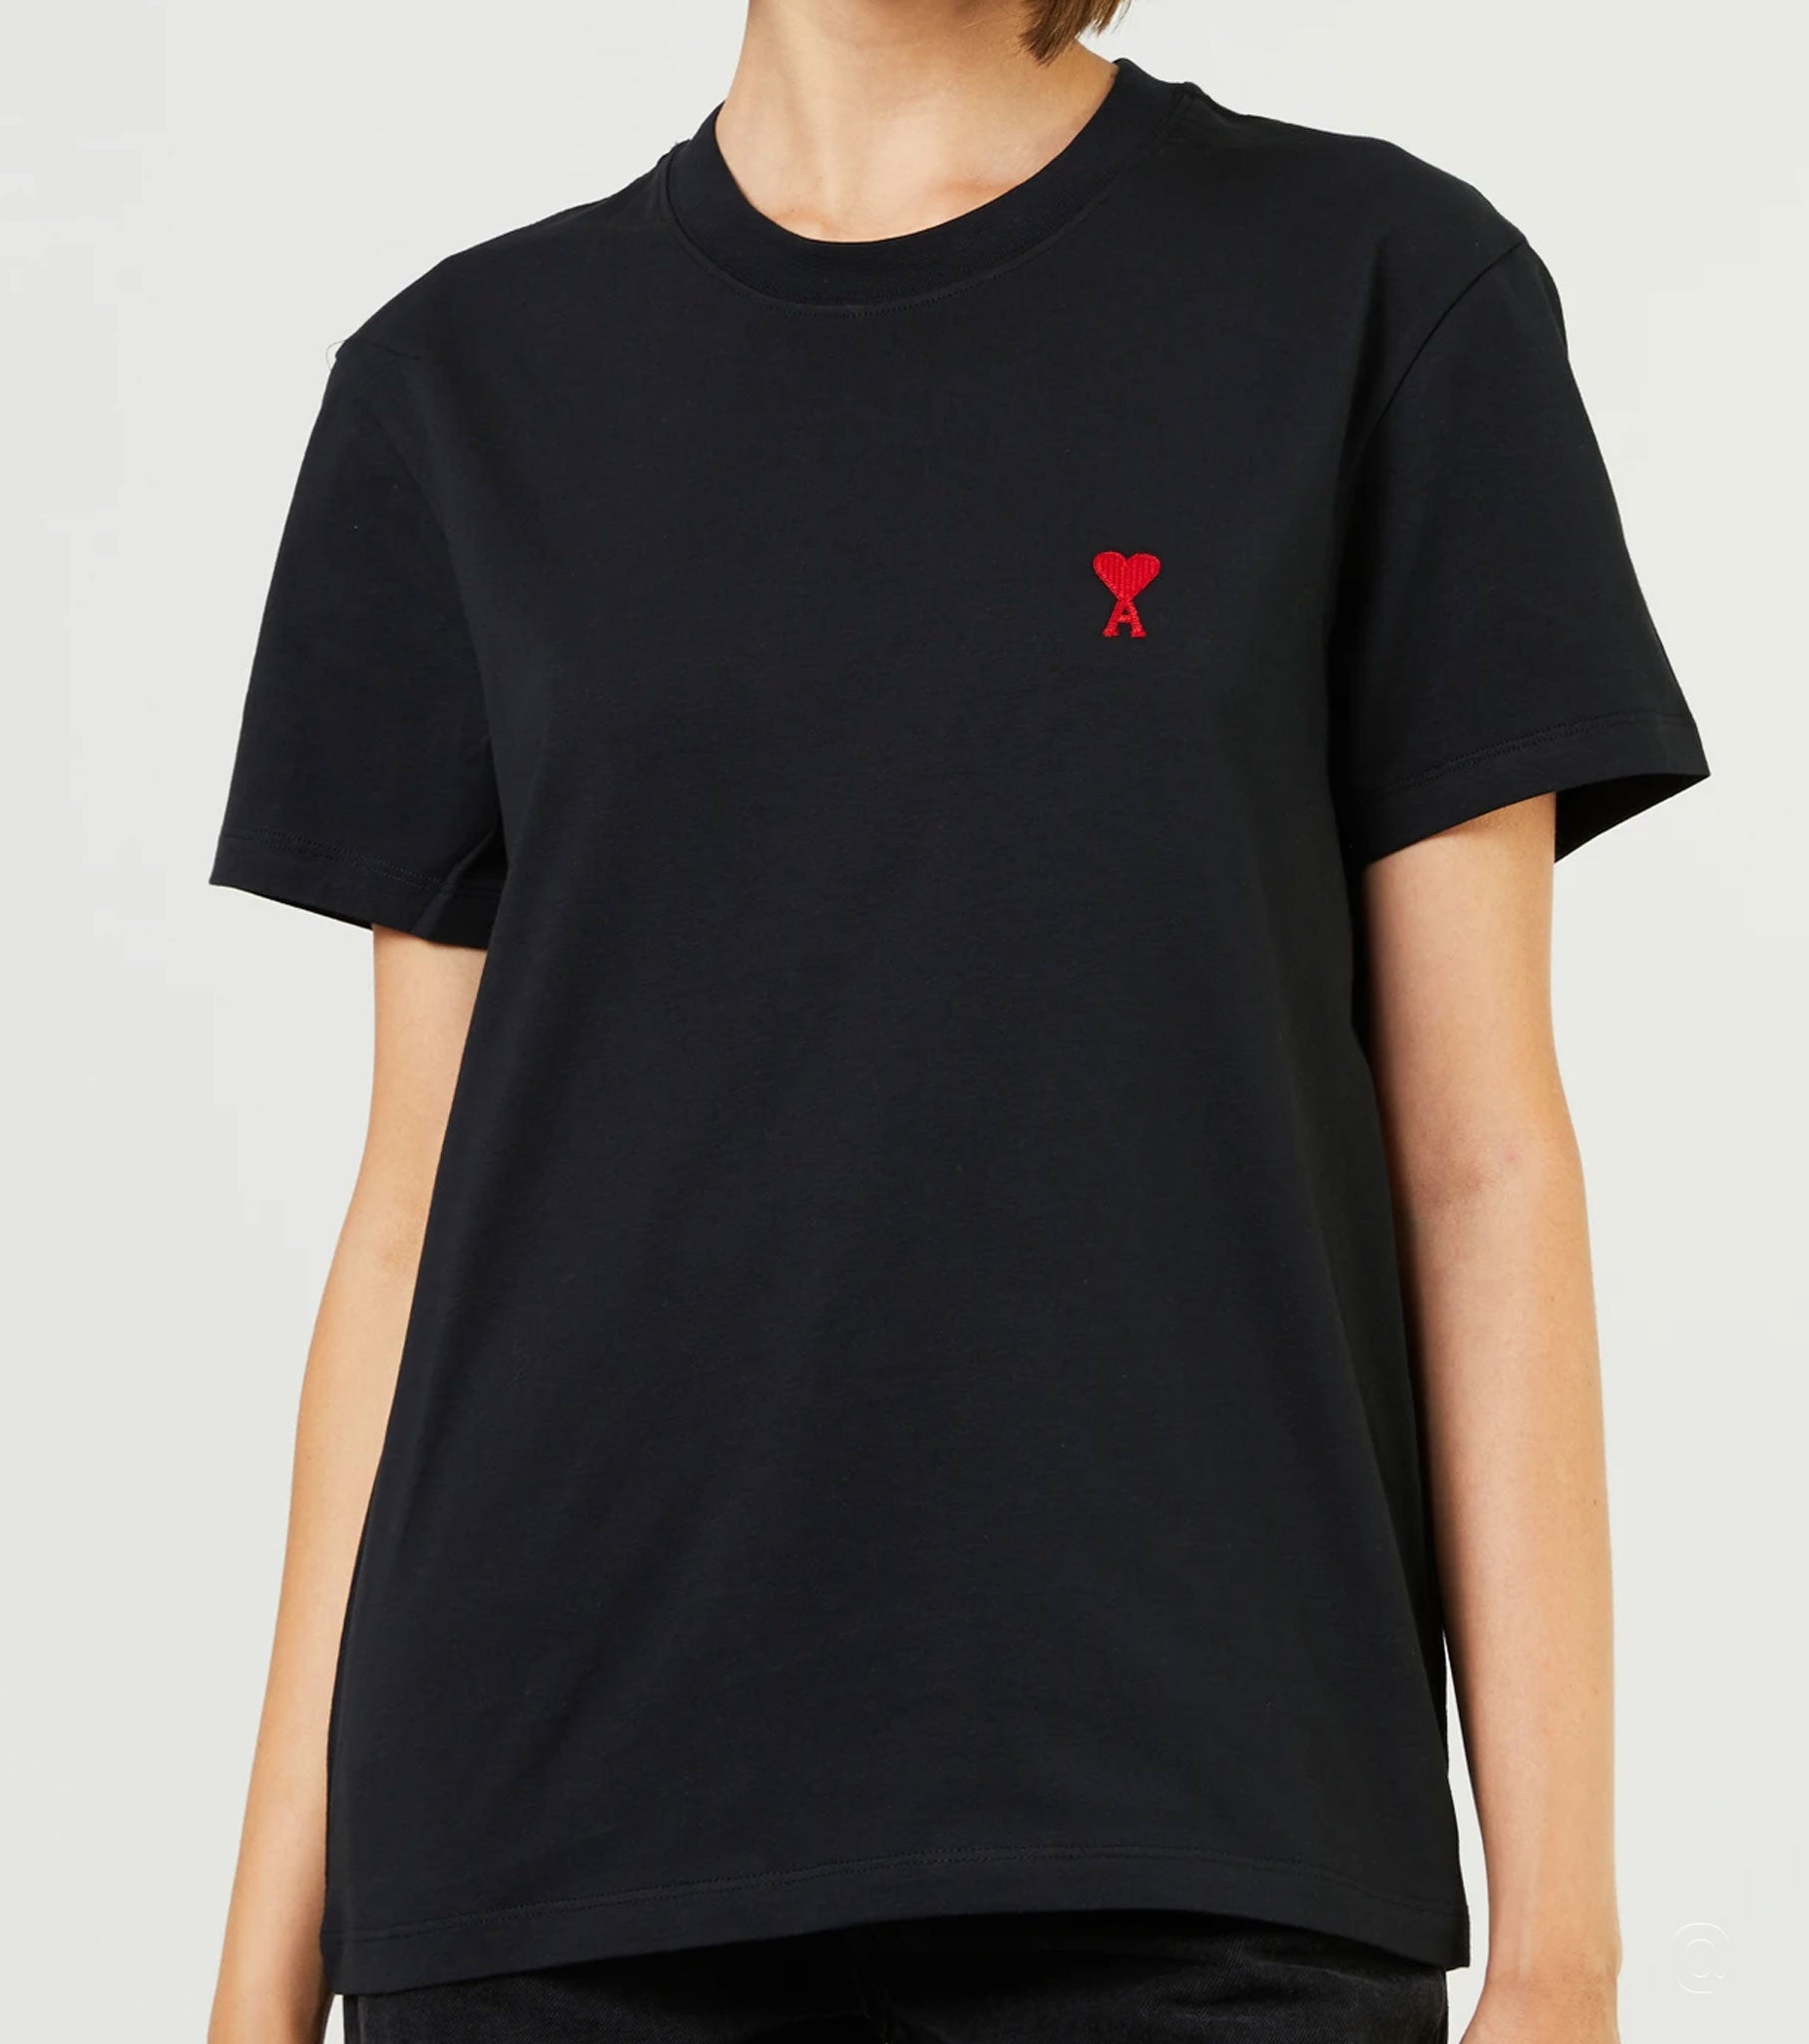 Black Unisex Cotton T-shirt